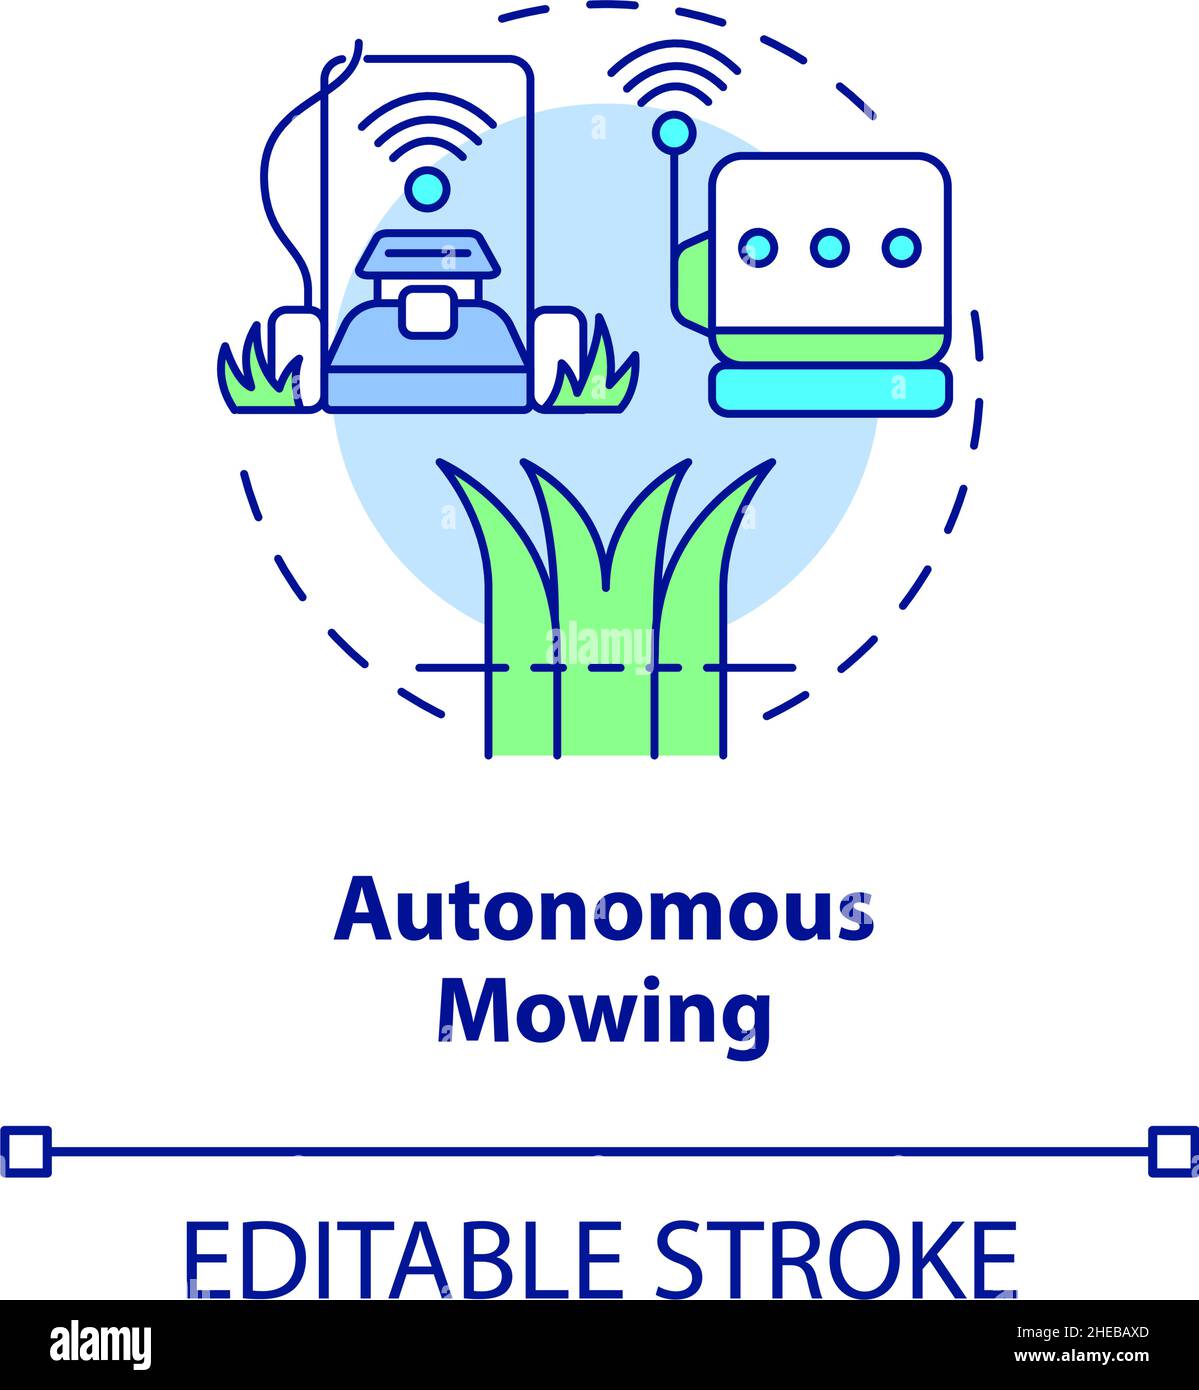 Autonomous mowing concept icon Stock Vector